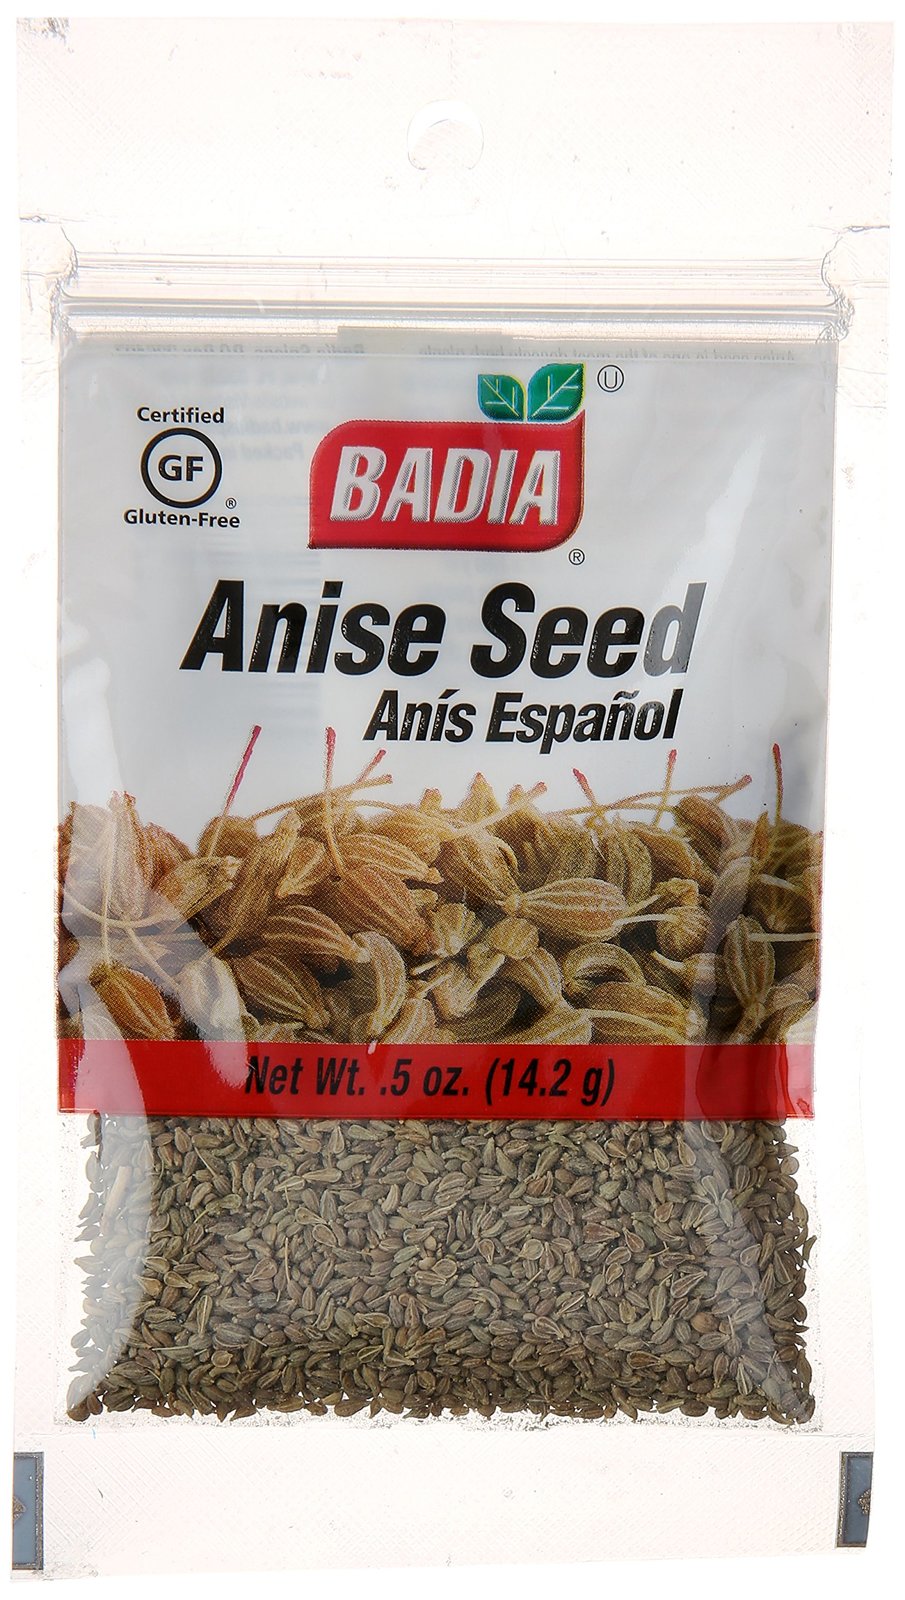 Badia Anise Seed, 0.5 oz - $5.89